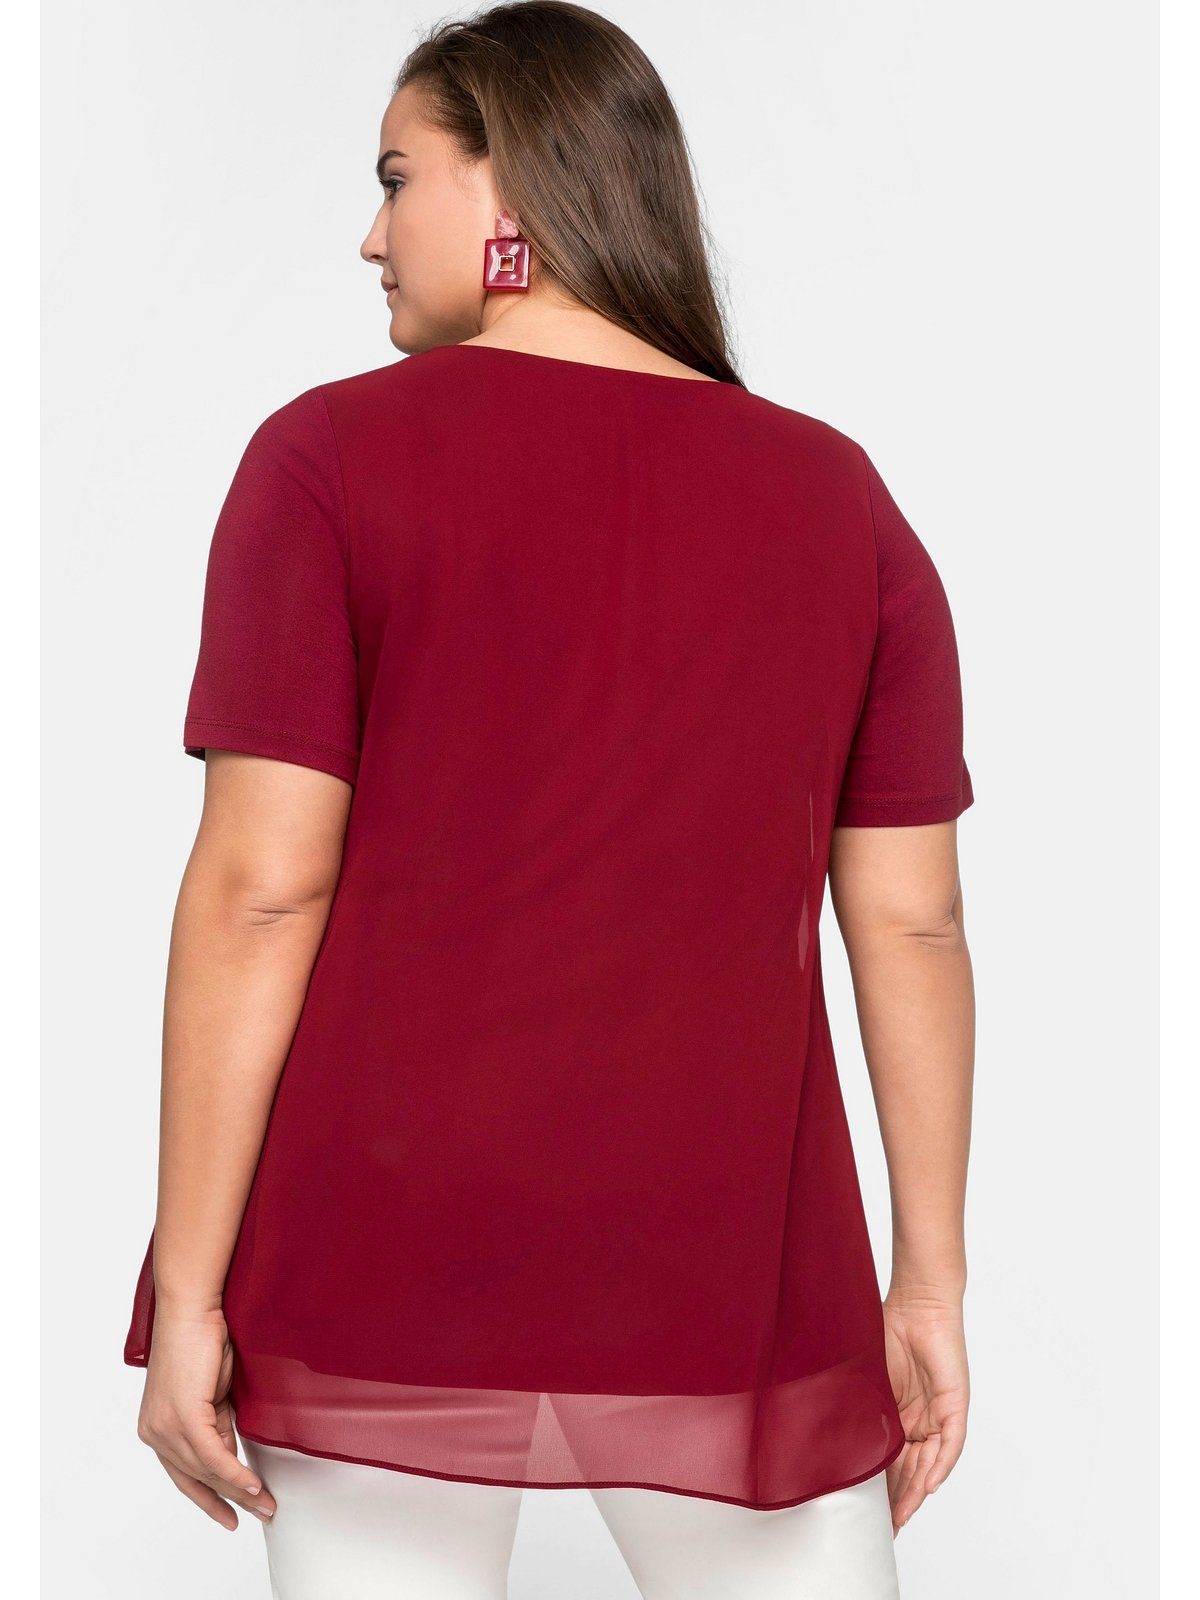 Sheego im rubinrot Blusenshirt Größen Lagenlook Große